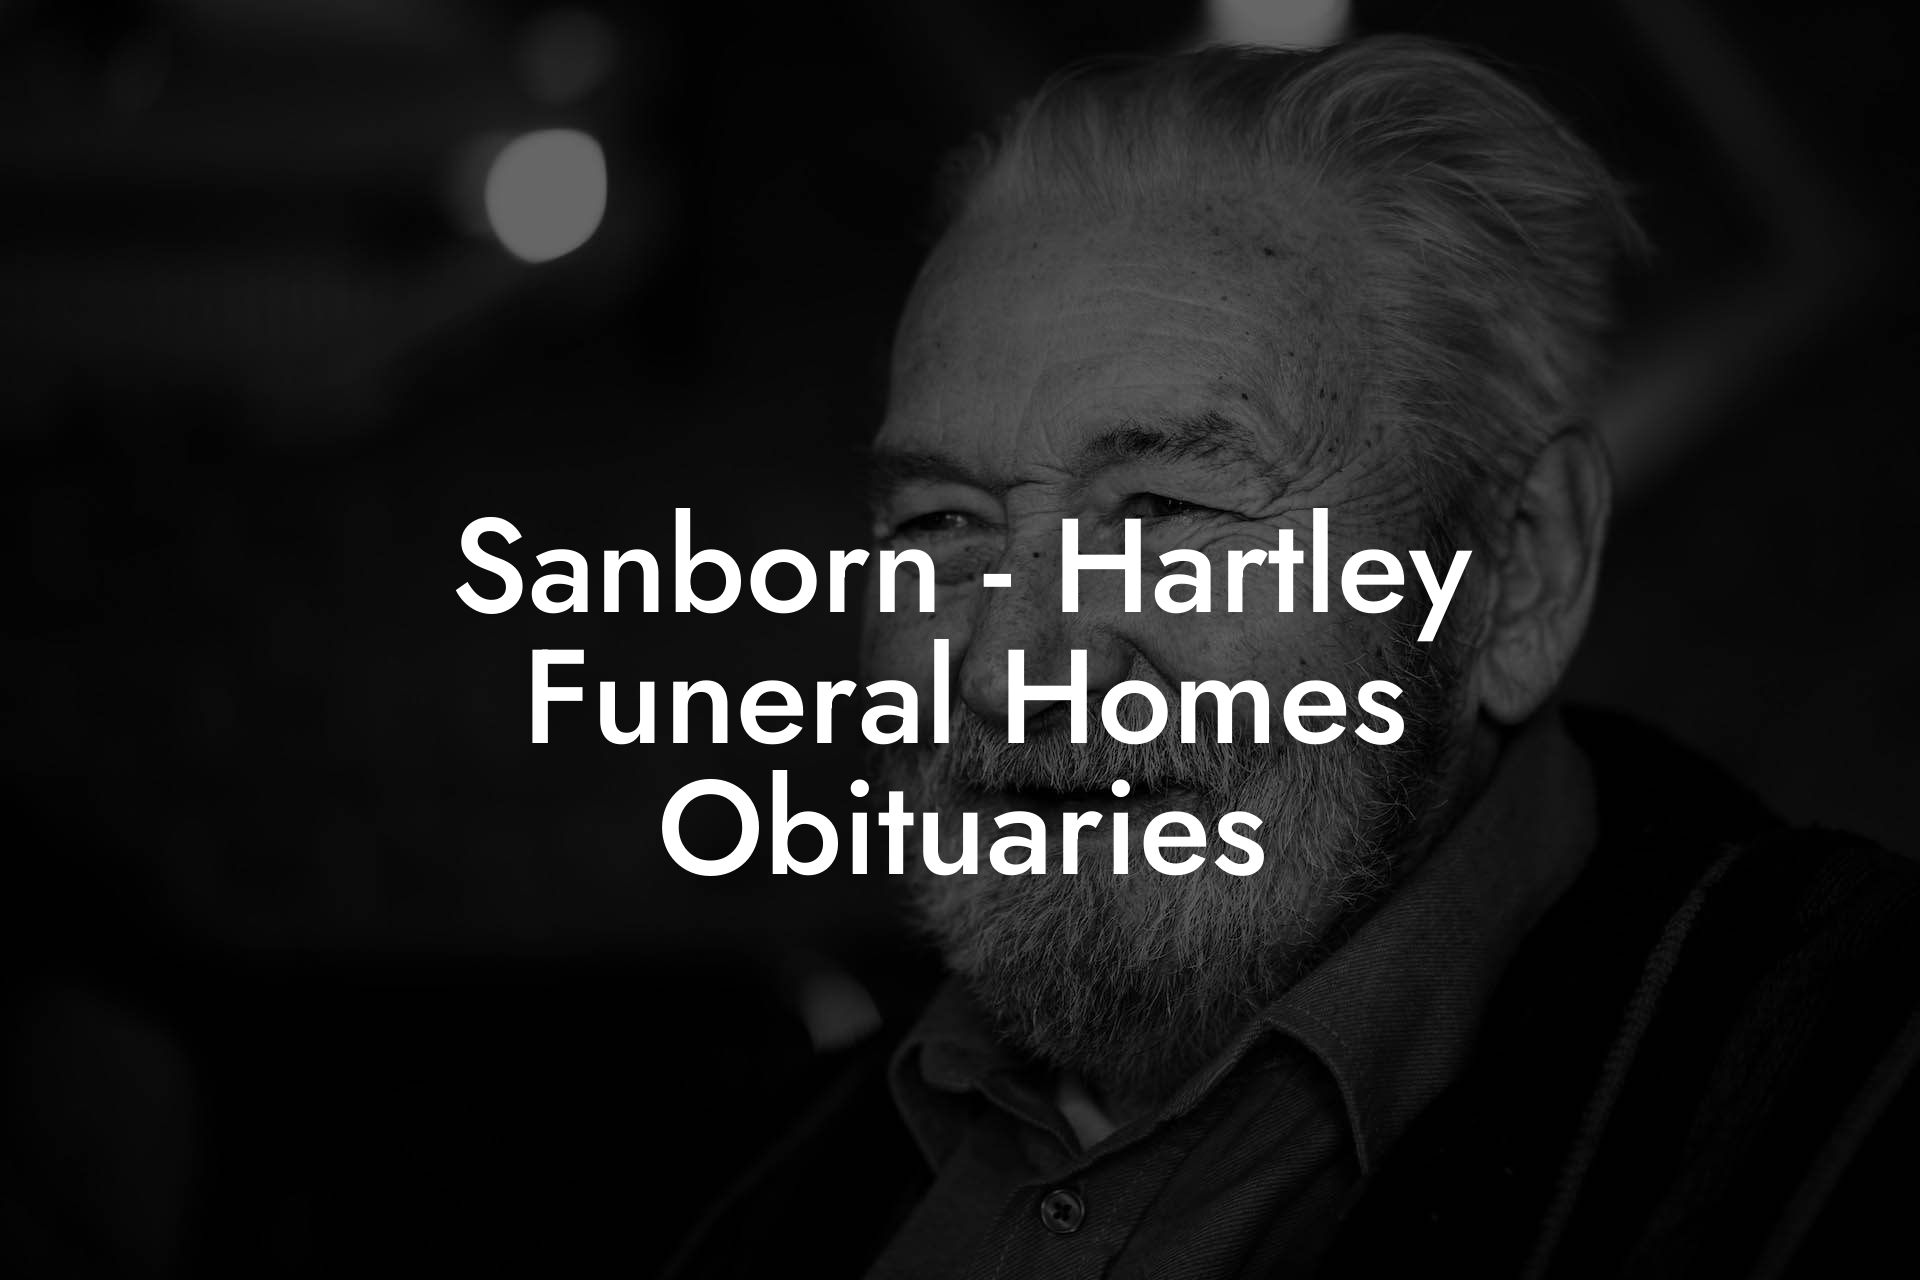 Sanborn - Hartley Funeral Homes Obituaries